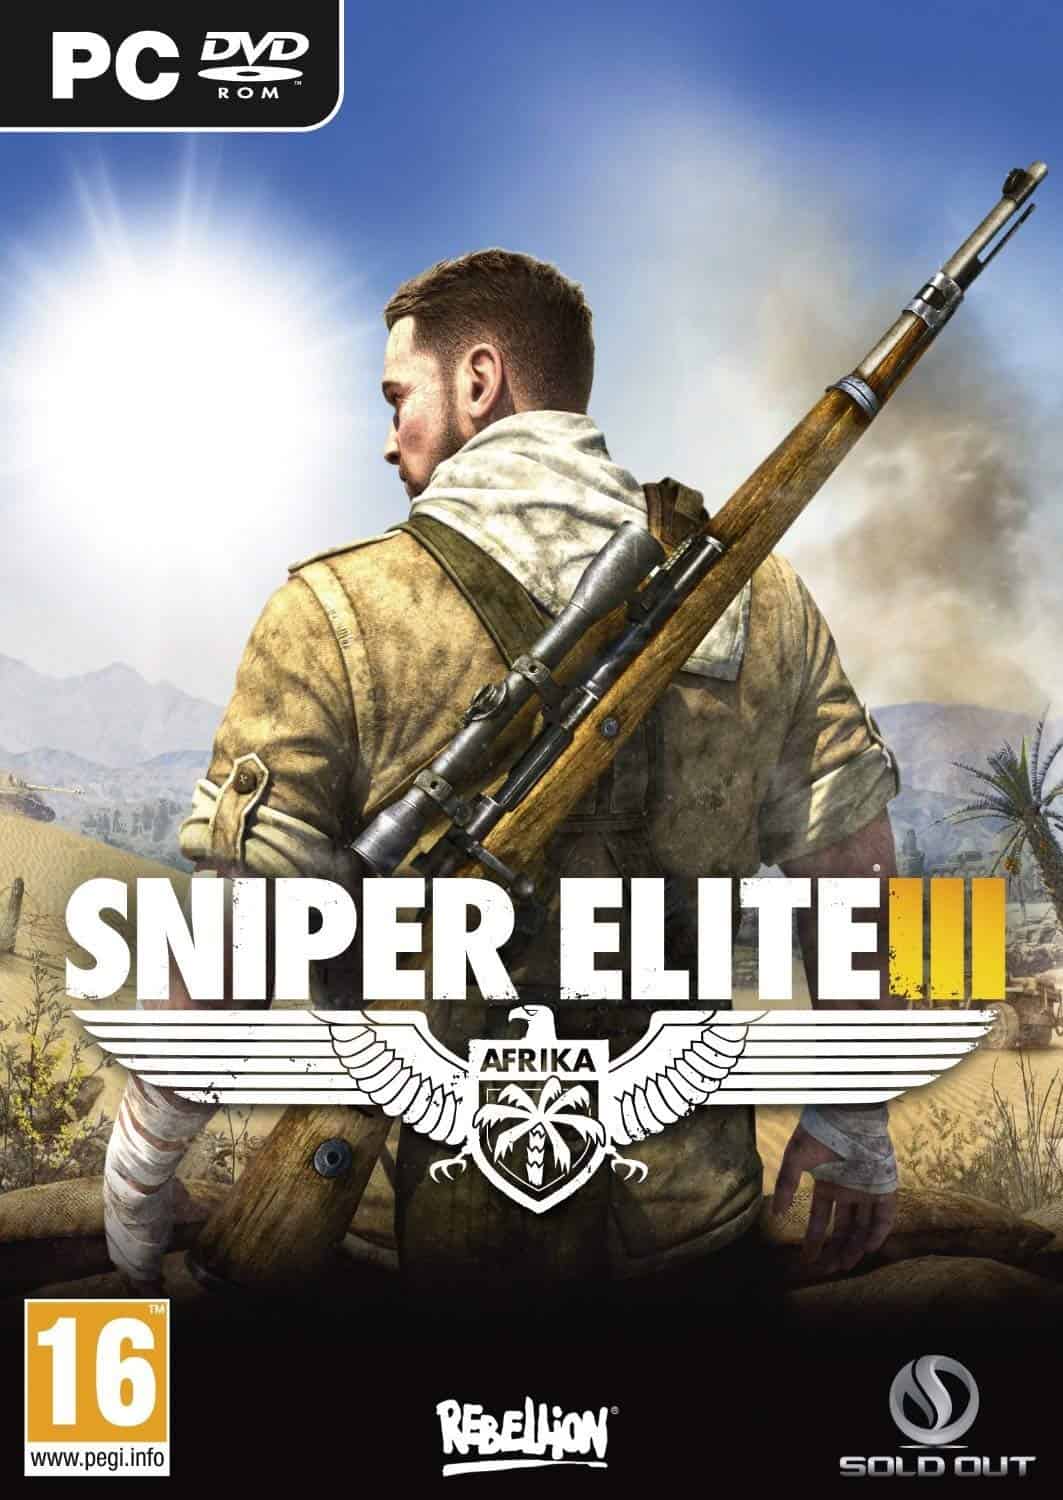 sniper elite 4 pc download ita